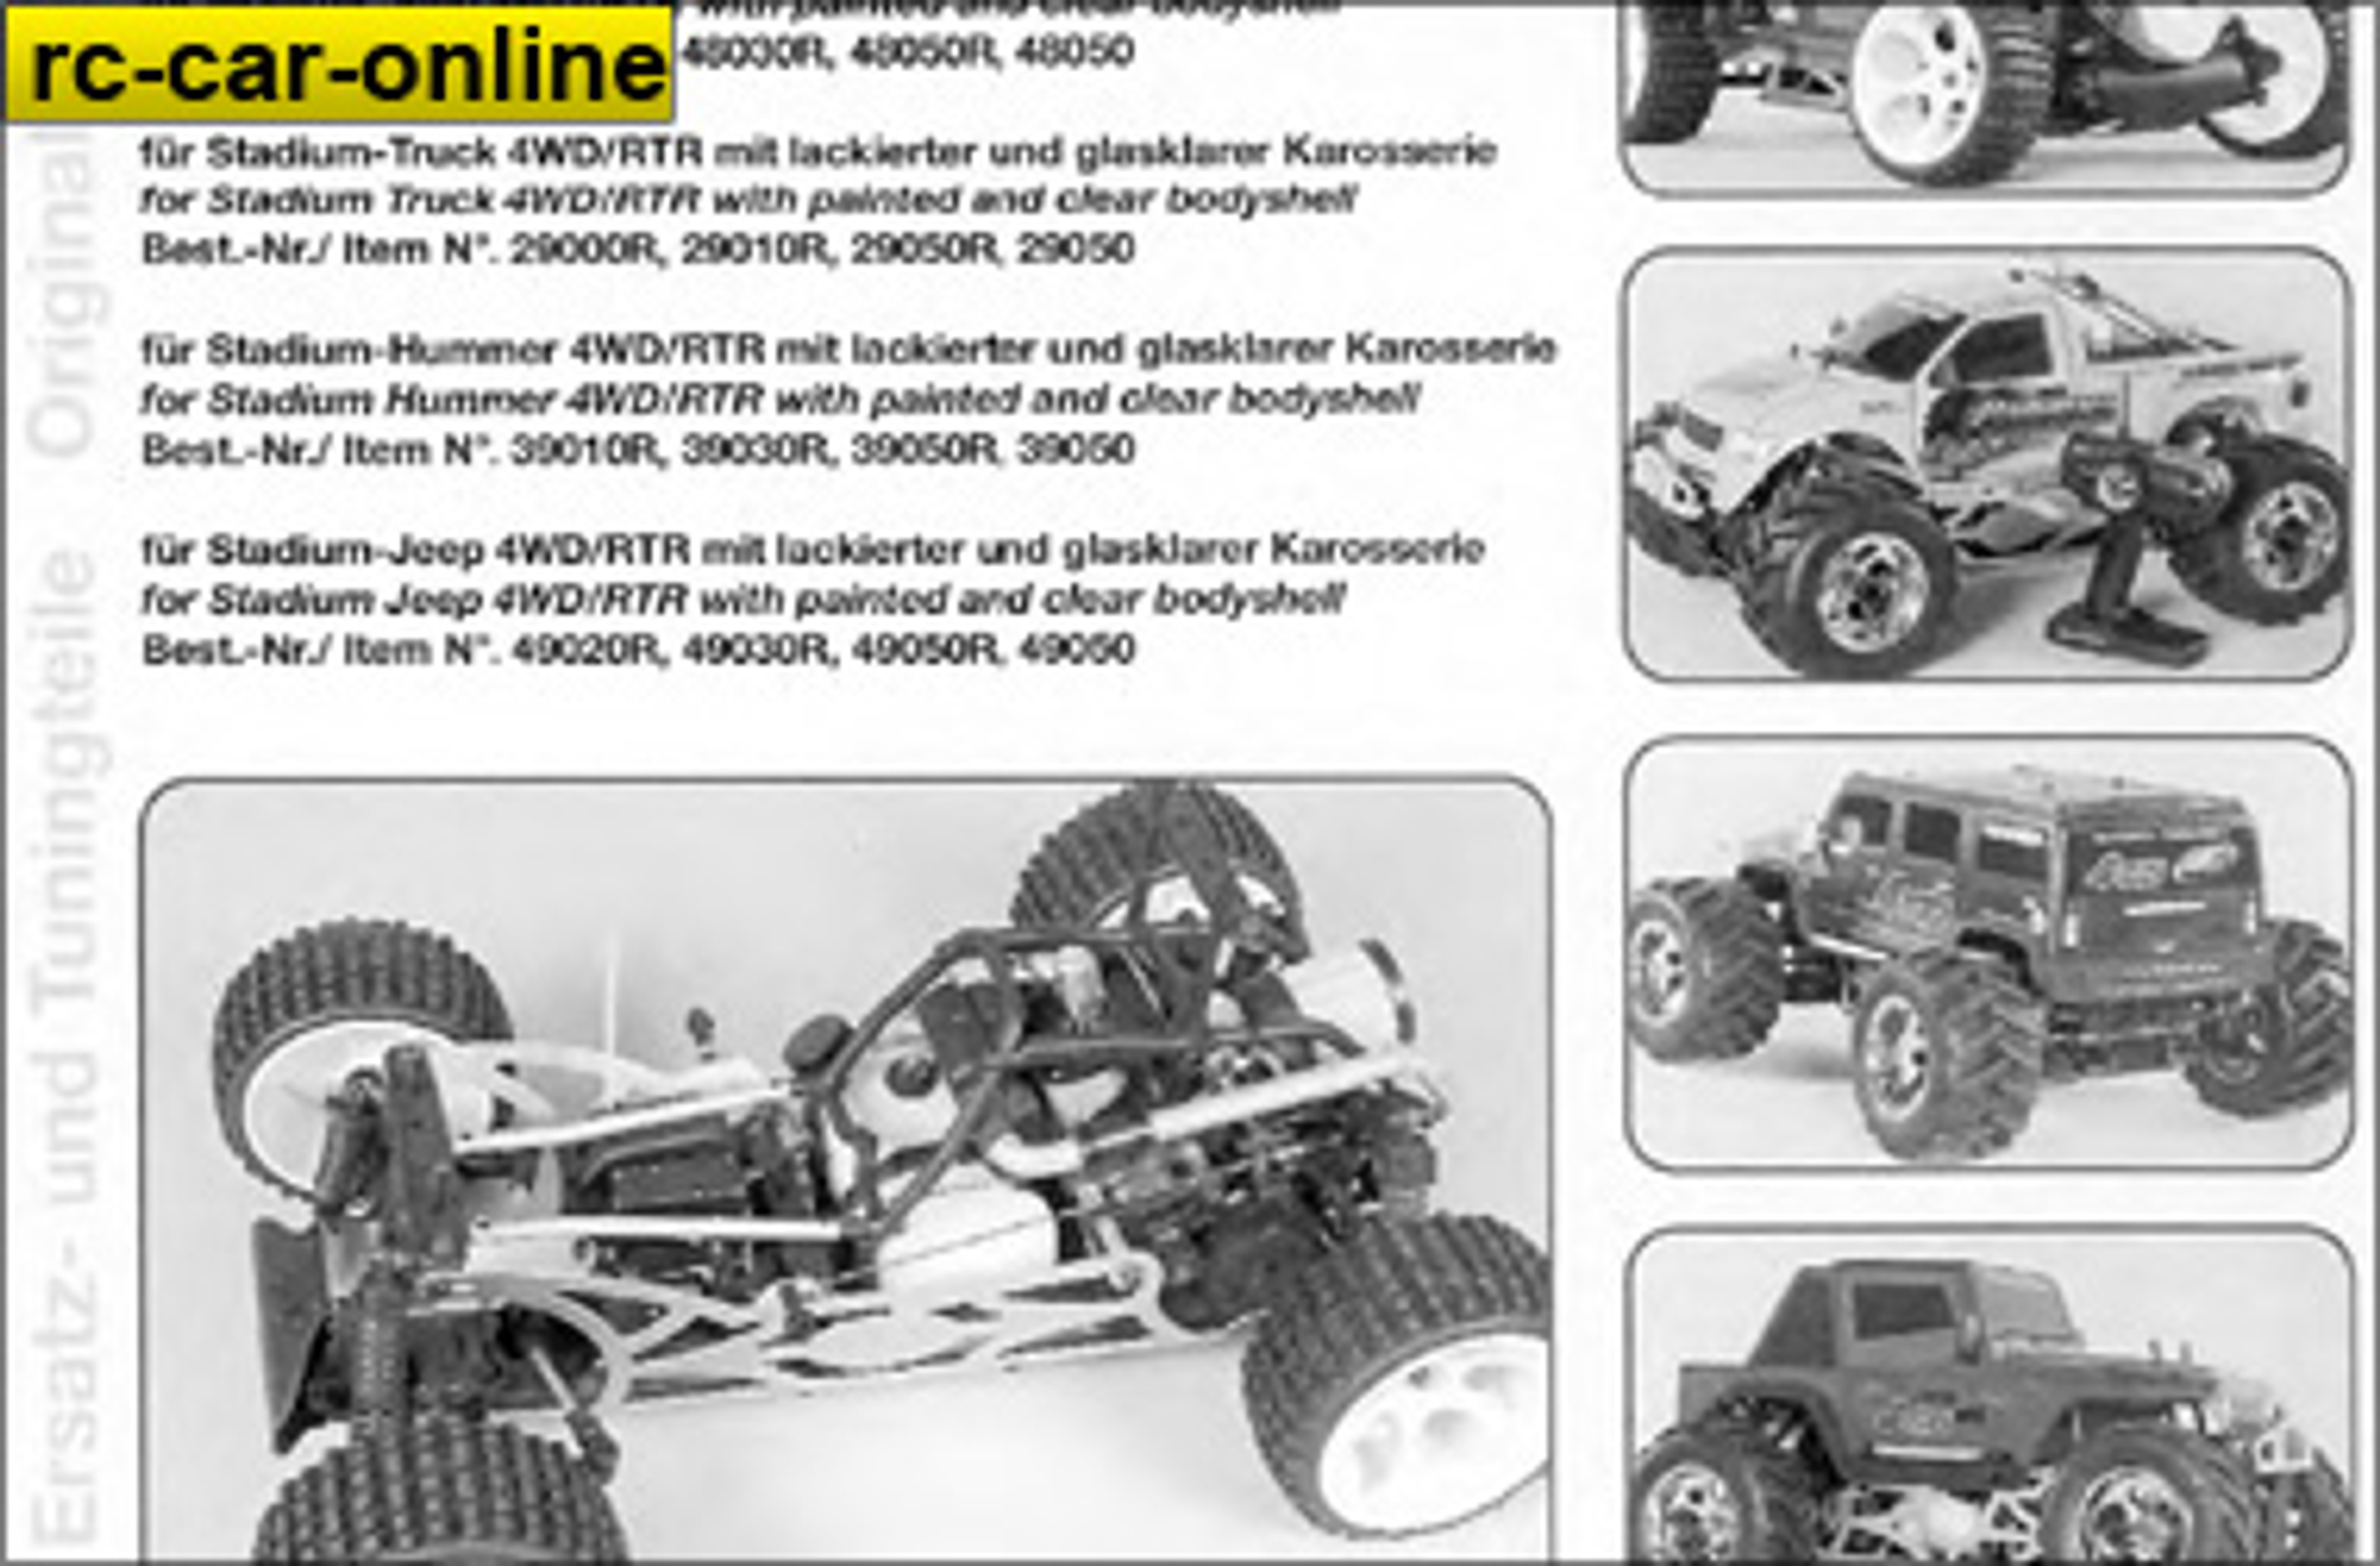 y0961/01 FG Anleitungsset für Beetle/Monster Sportsline 4WD, 1 St.